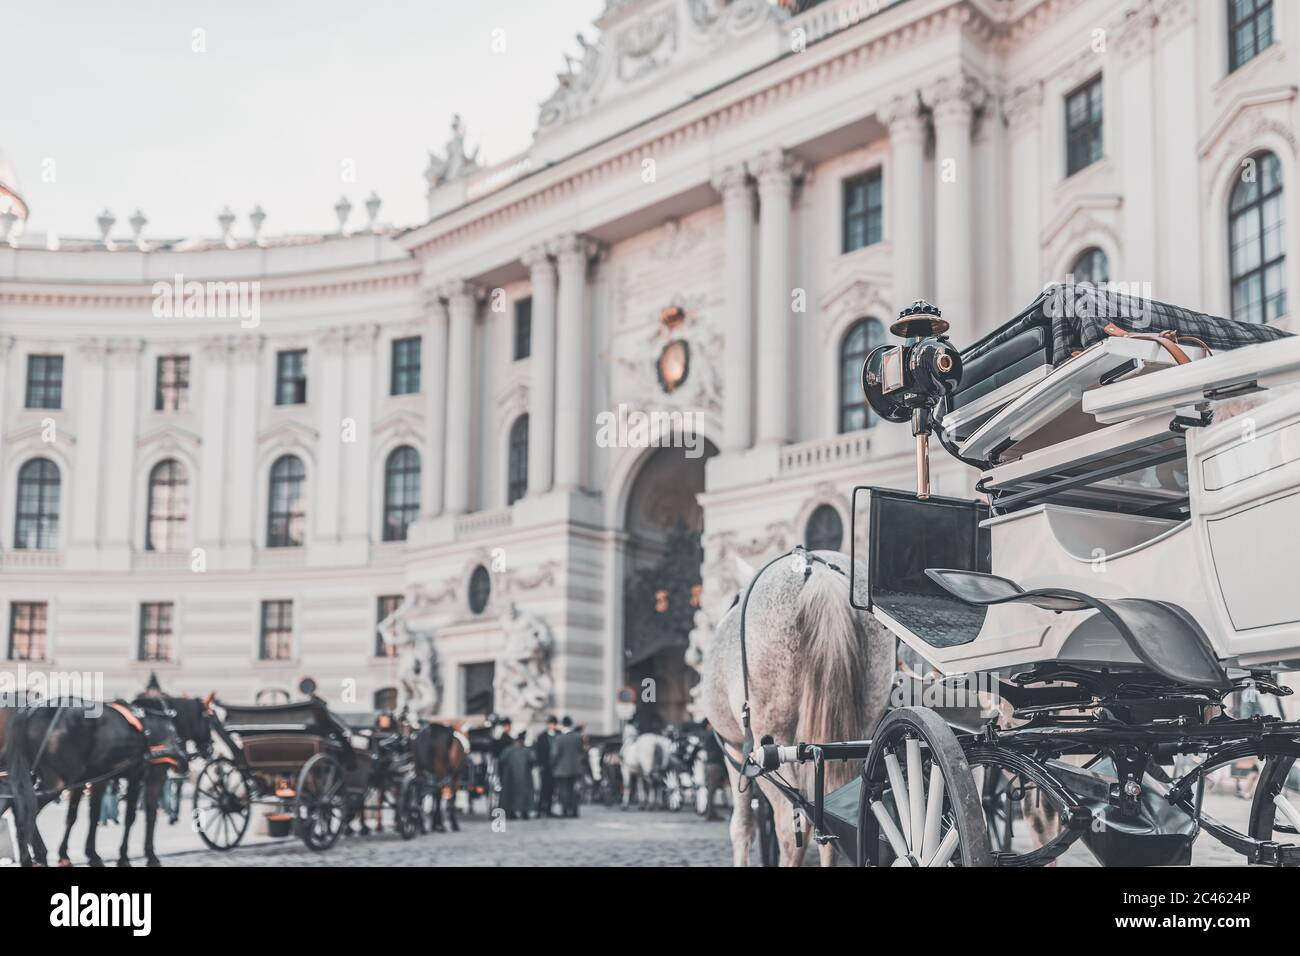 Fiaker de Vienne, calèche en face du Palais impérial - Hofburg Banque D'Images